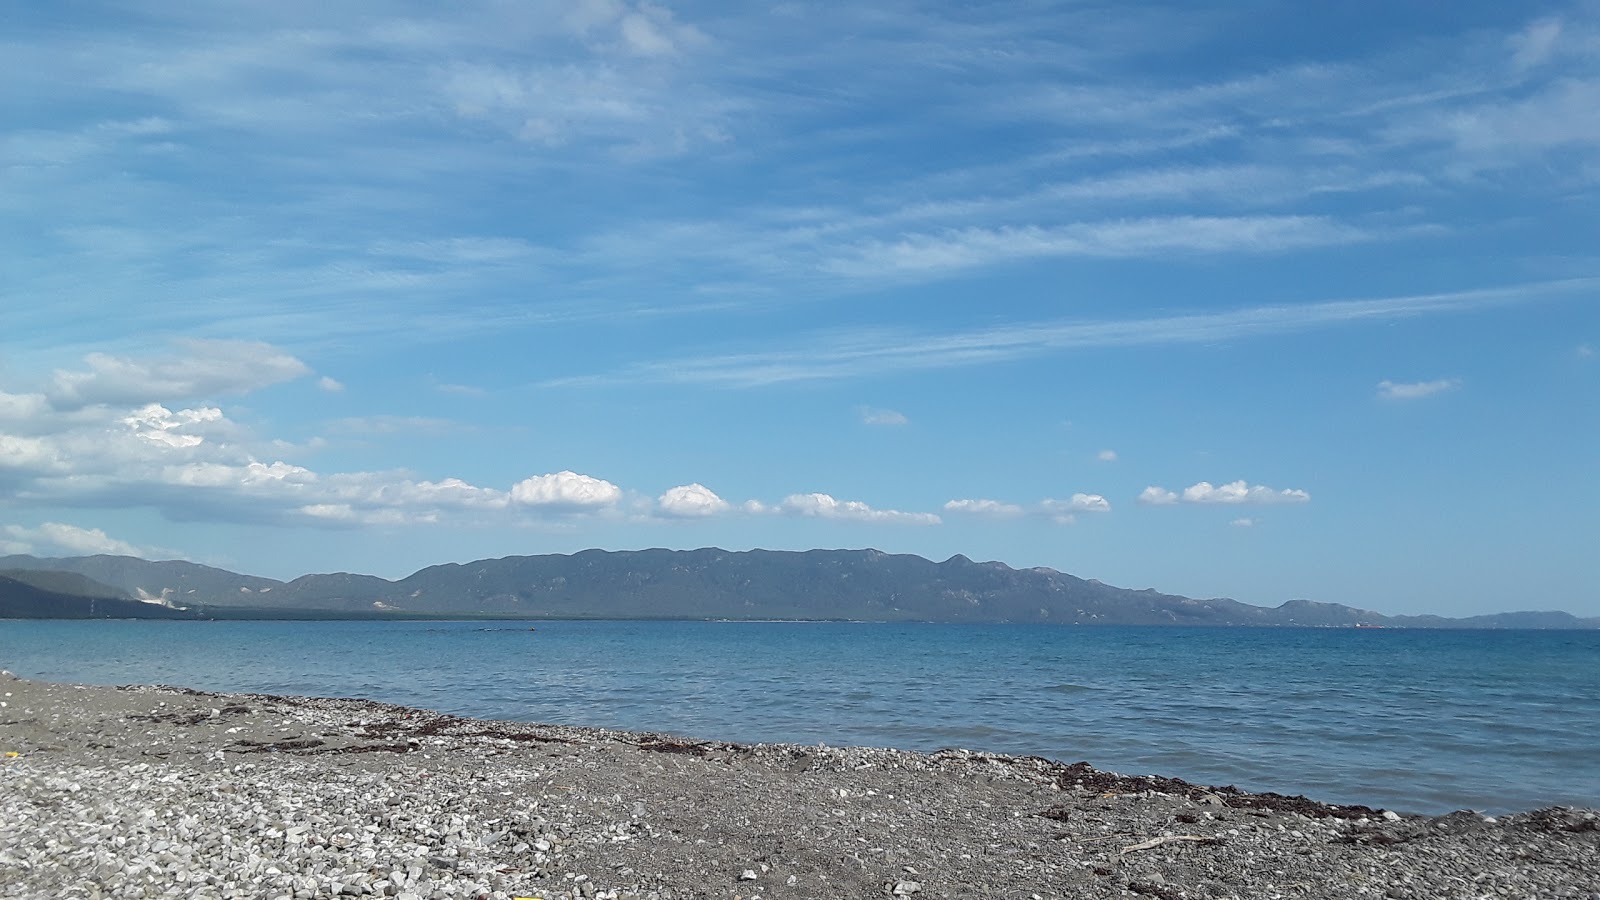 Caracoles beach'in fotoğrafı gri ince çakıl taş yüzey ile